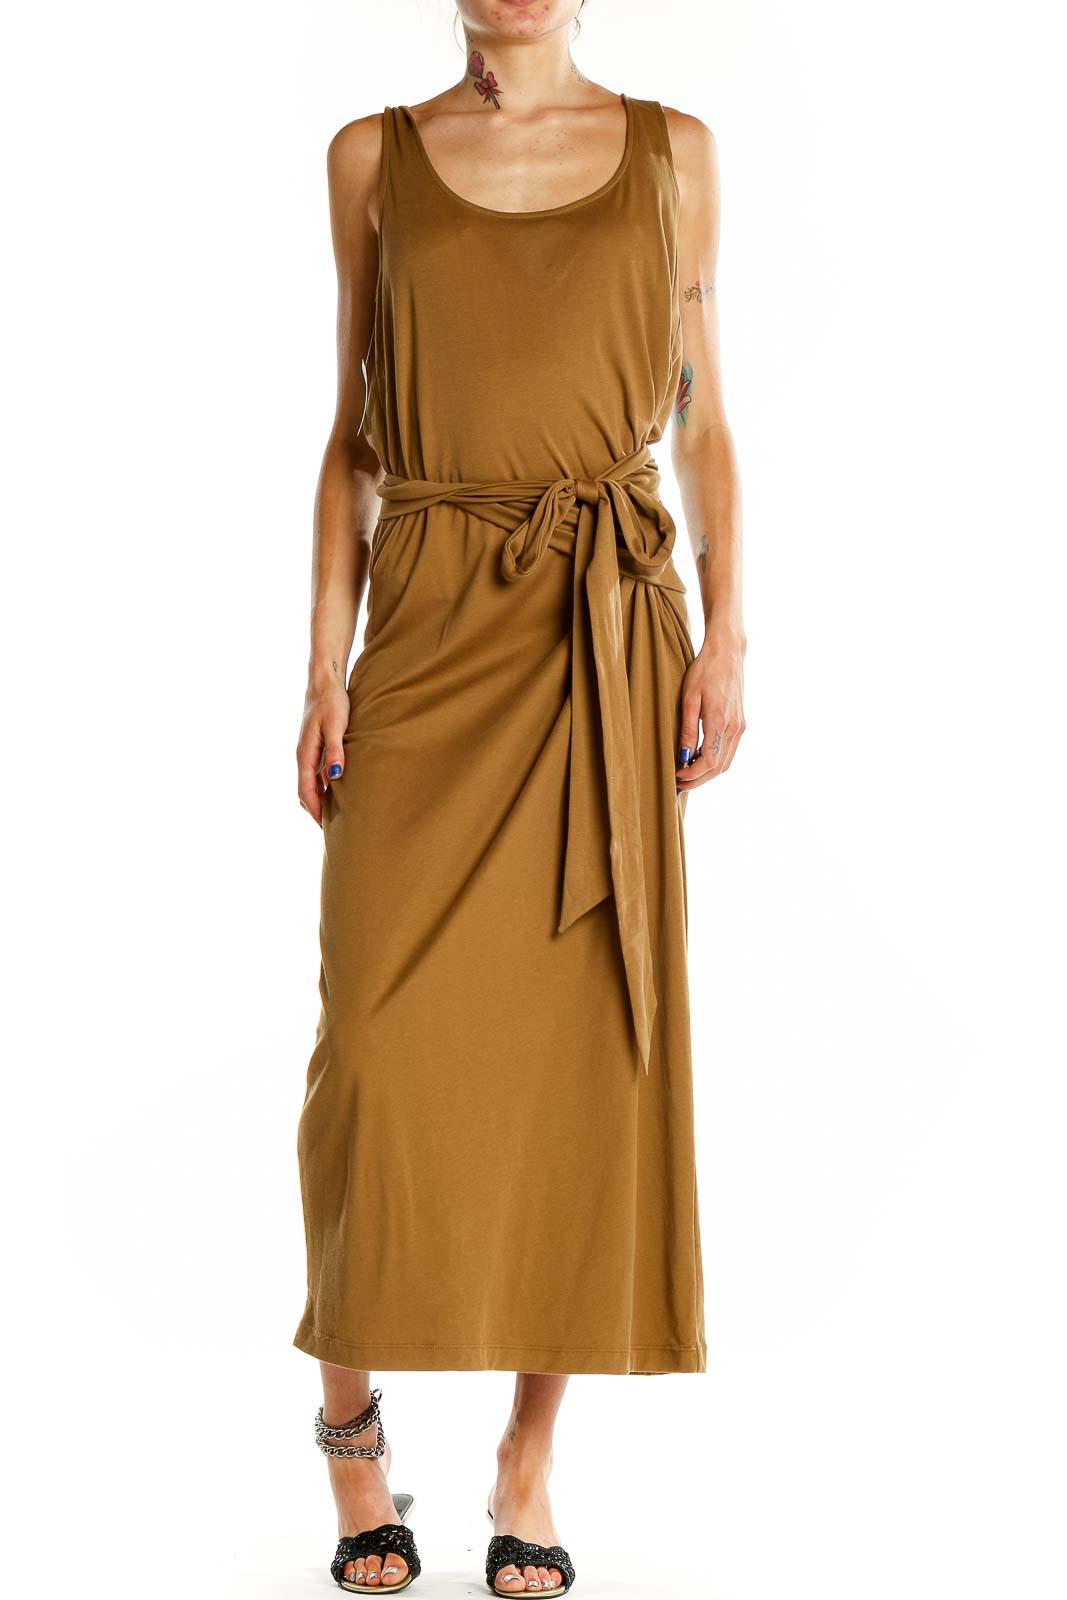 Brown Column Dress Front